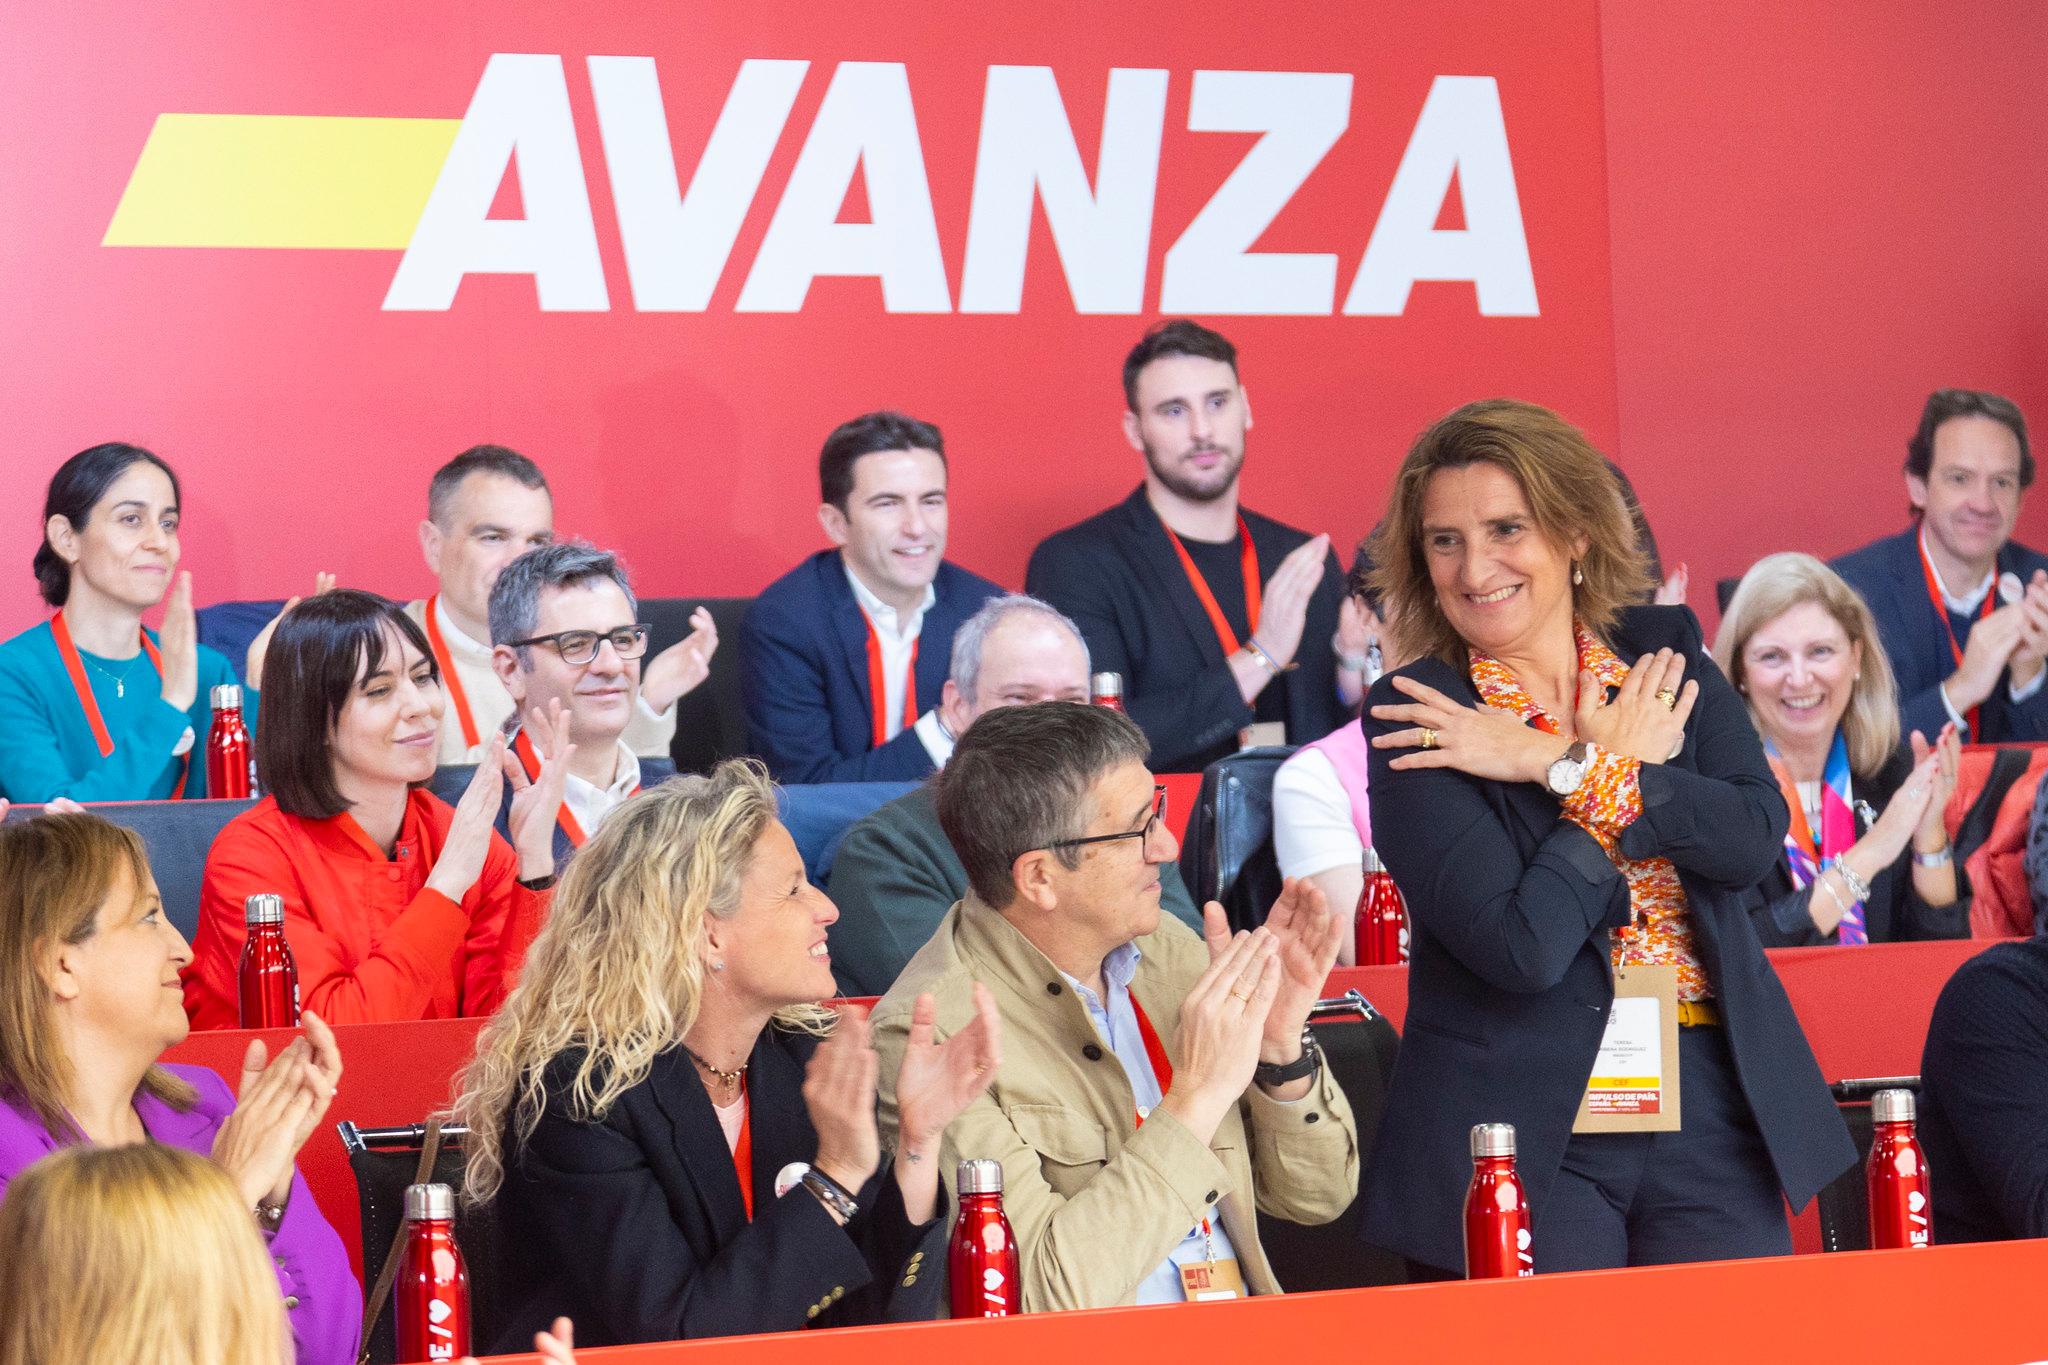 La cúpula socialista apel·la a la història per convèncer a Sánchez: "Pensa en els que van patir exili i repressió"